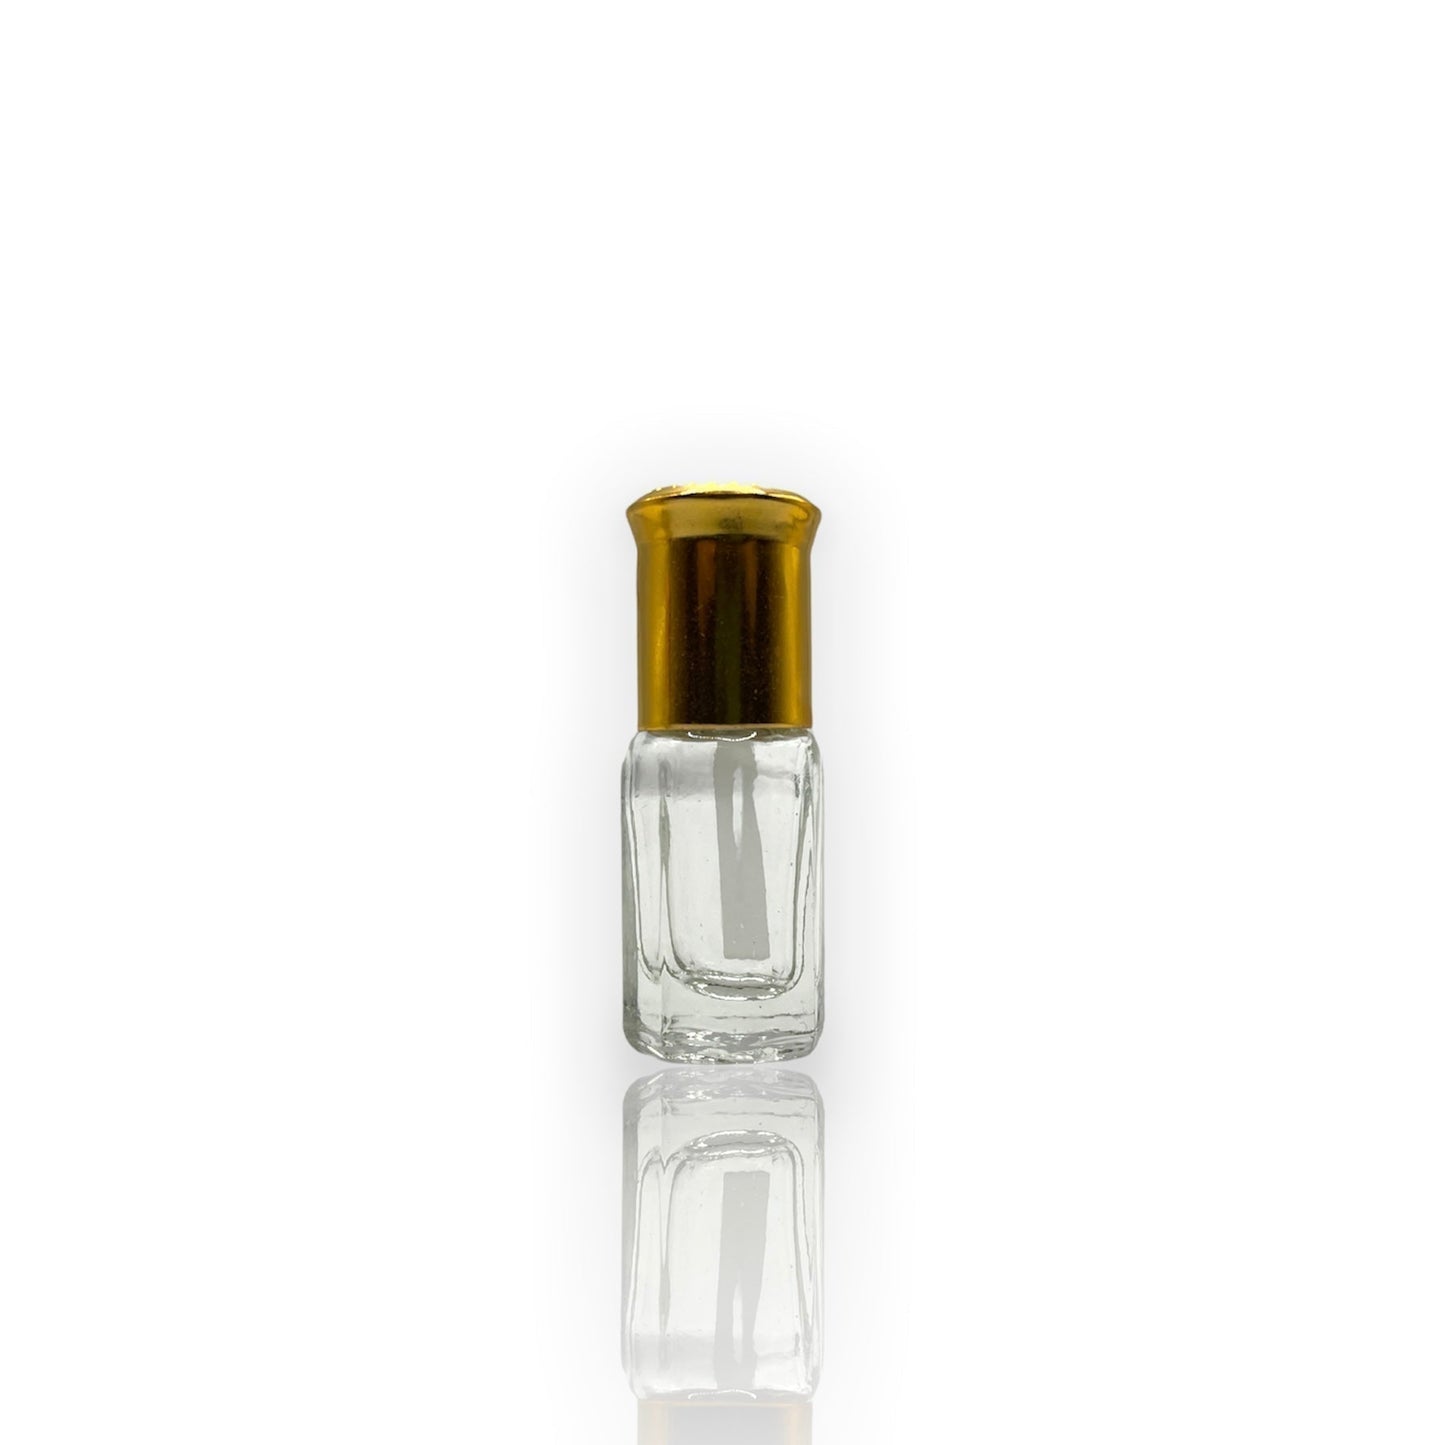 O-09 Oil Perfume *Inspired by Lail Maleki